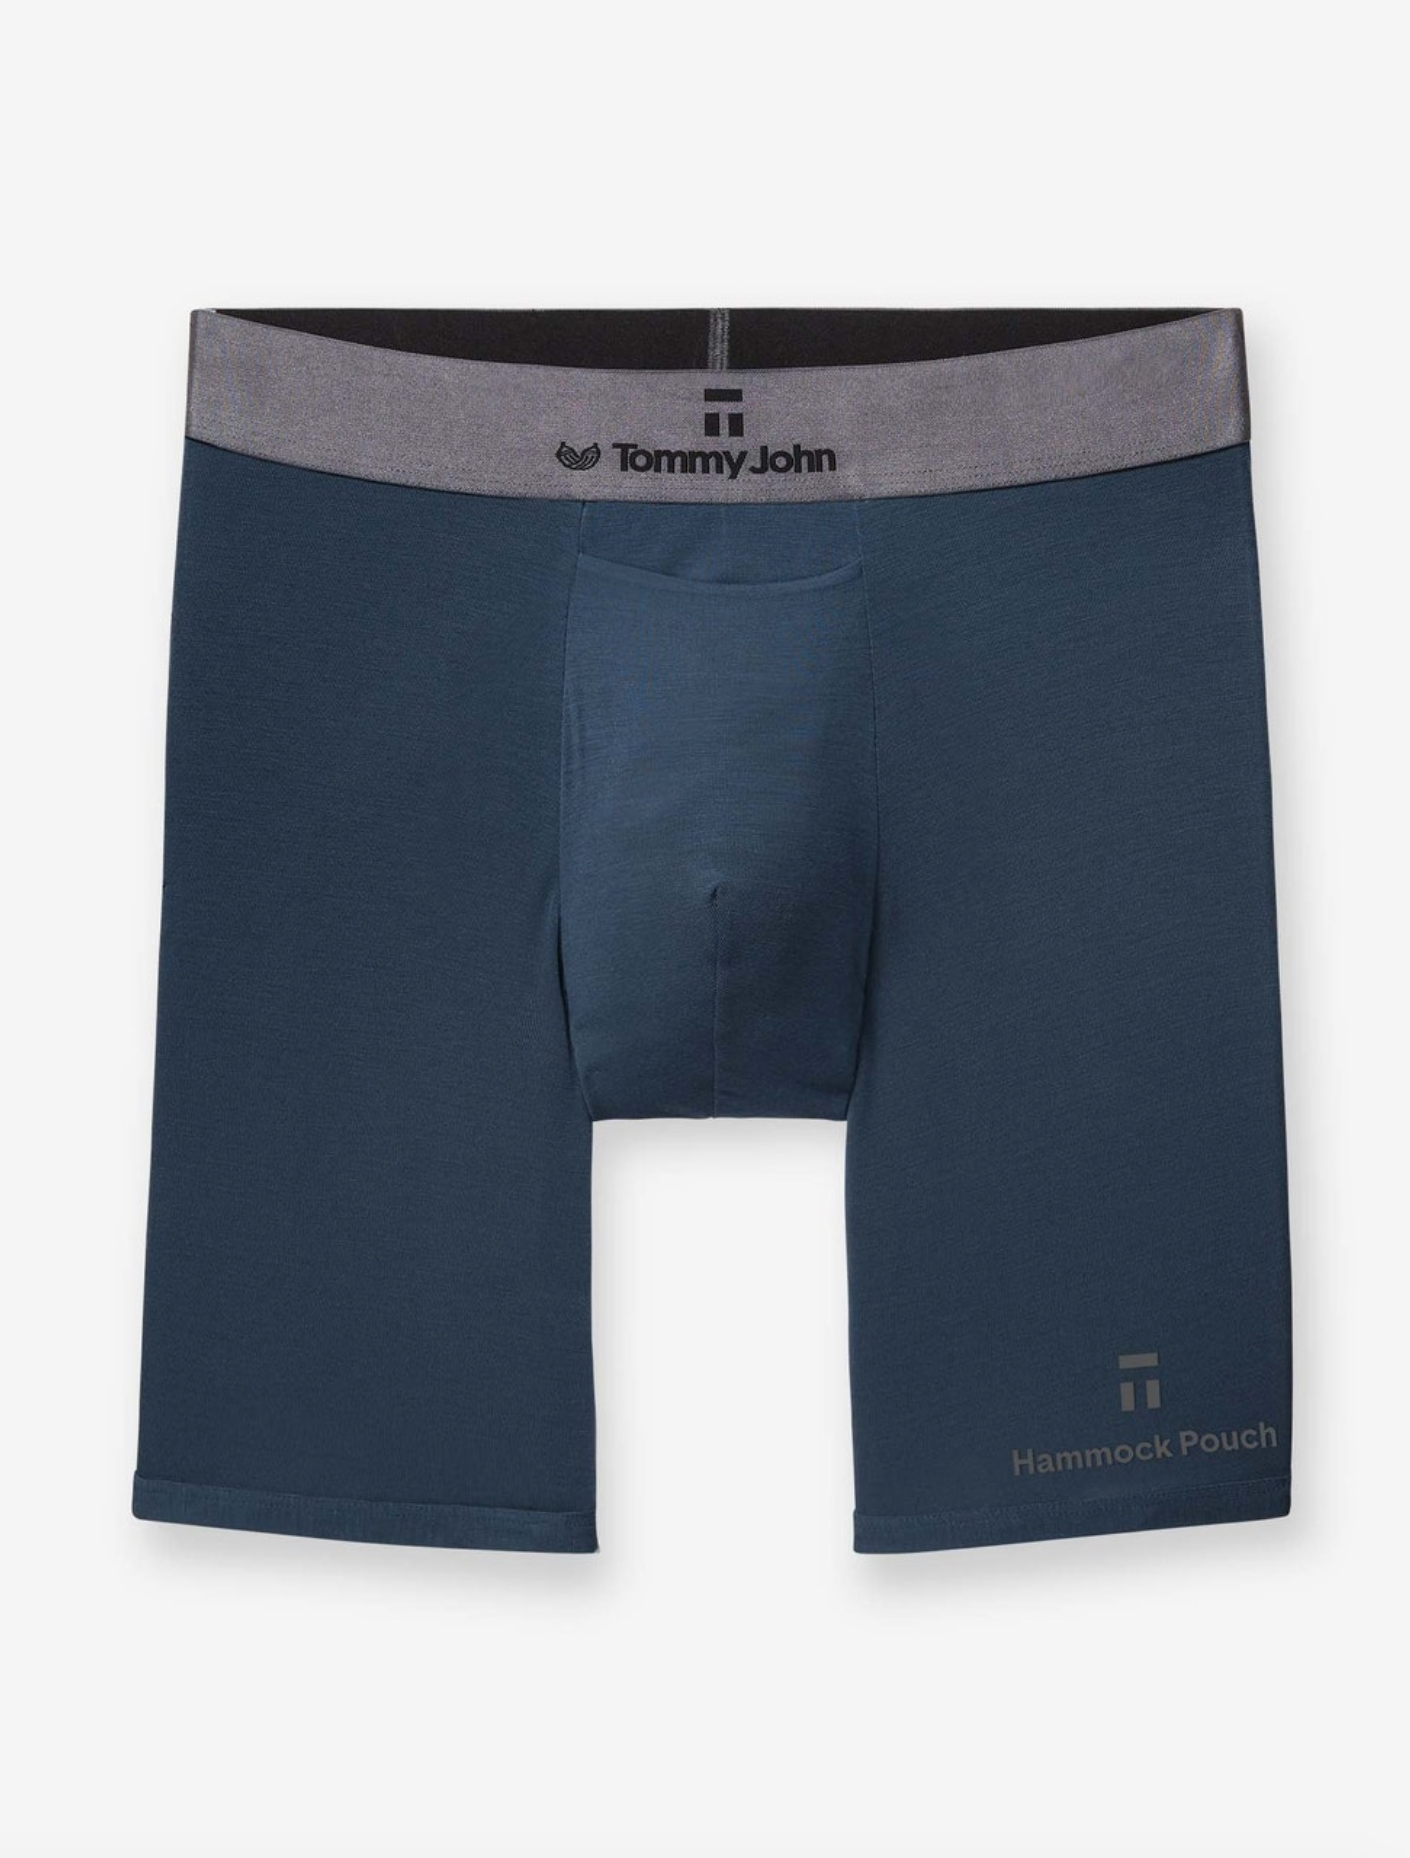 Tommy John Men's Trunk 4” Underwear - Innovative Hammock Pouch for